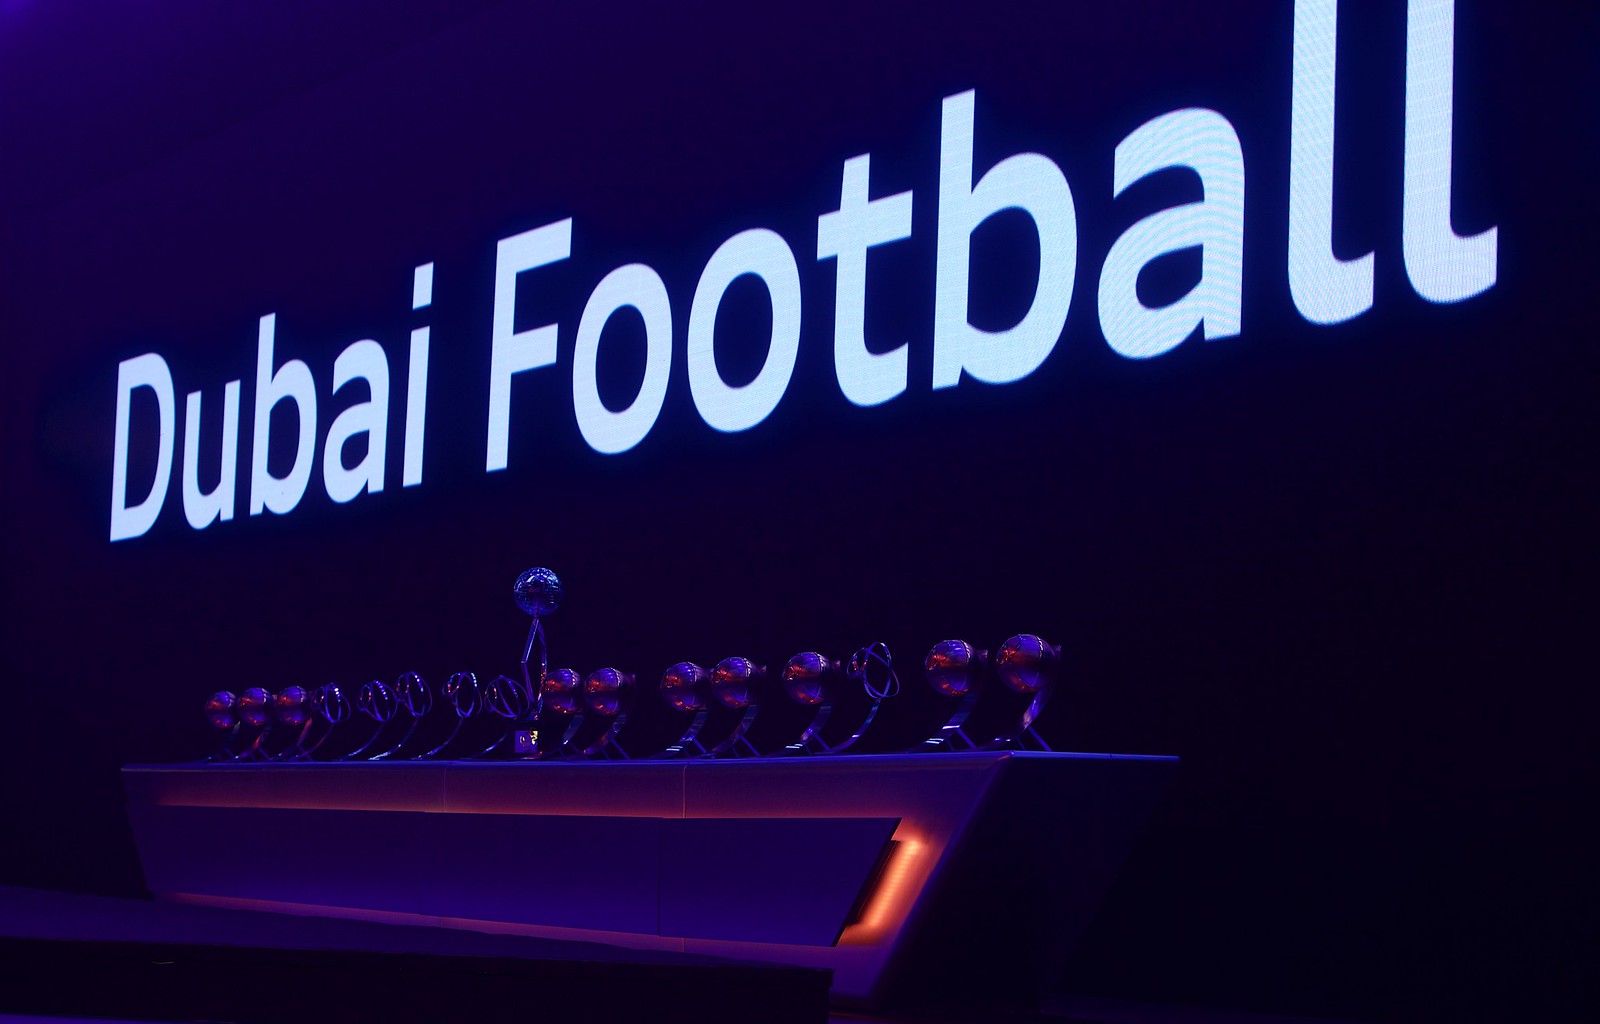 Globe Soccer Awards 2014